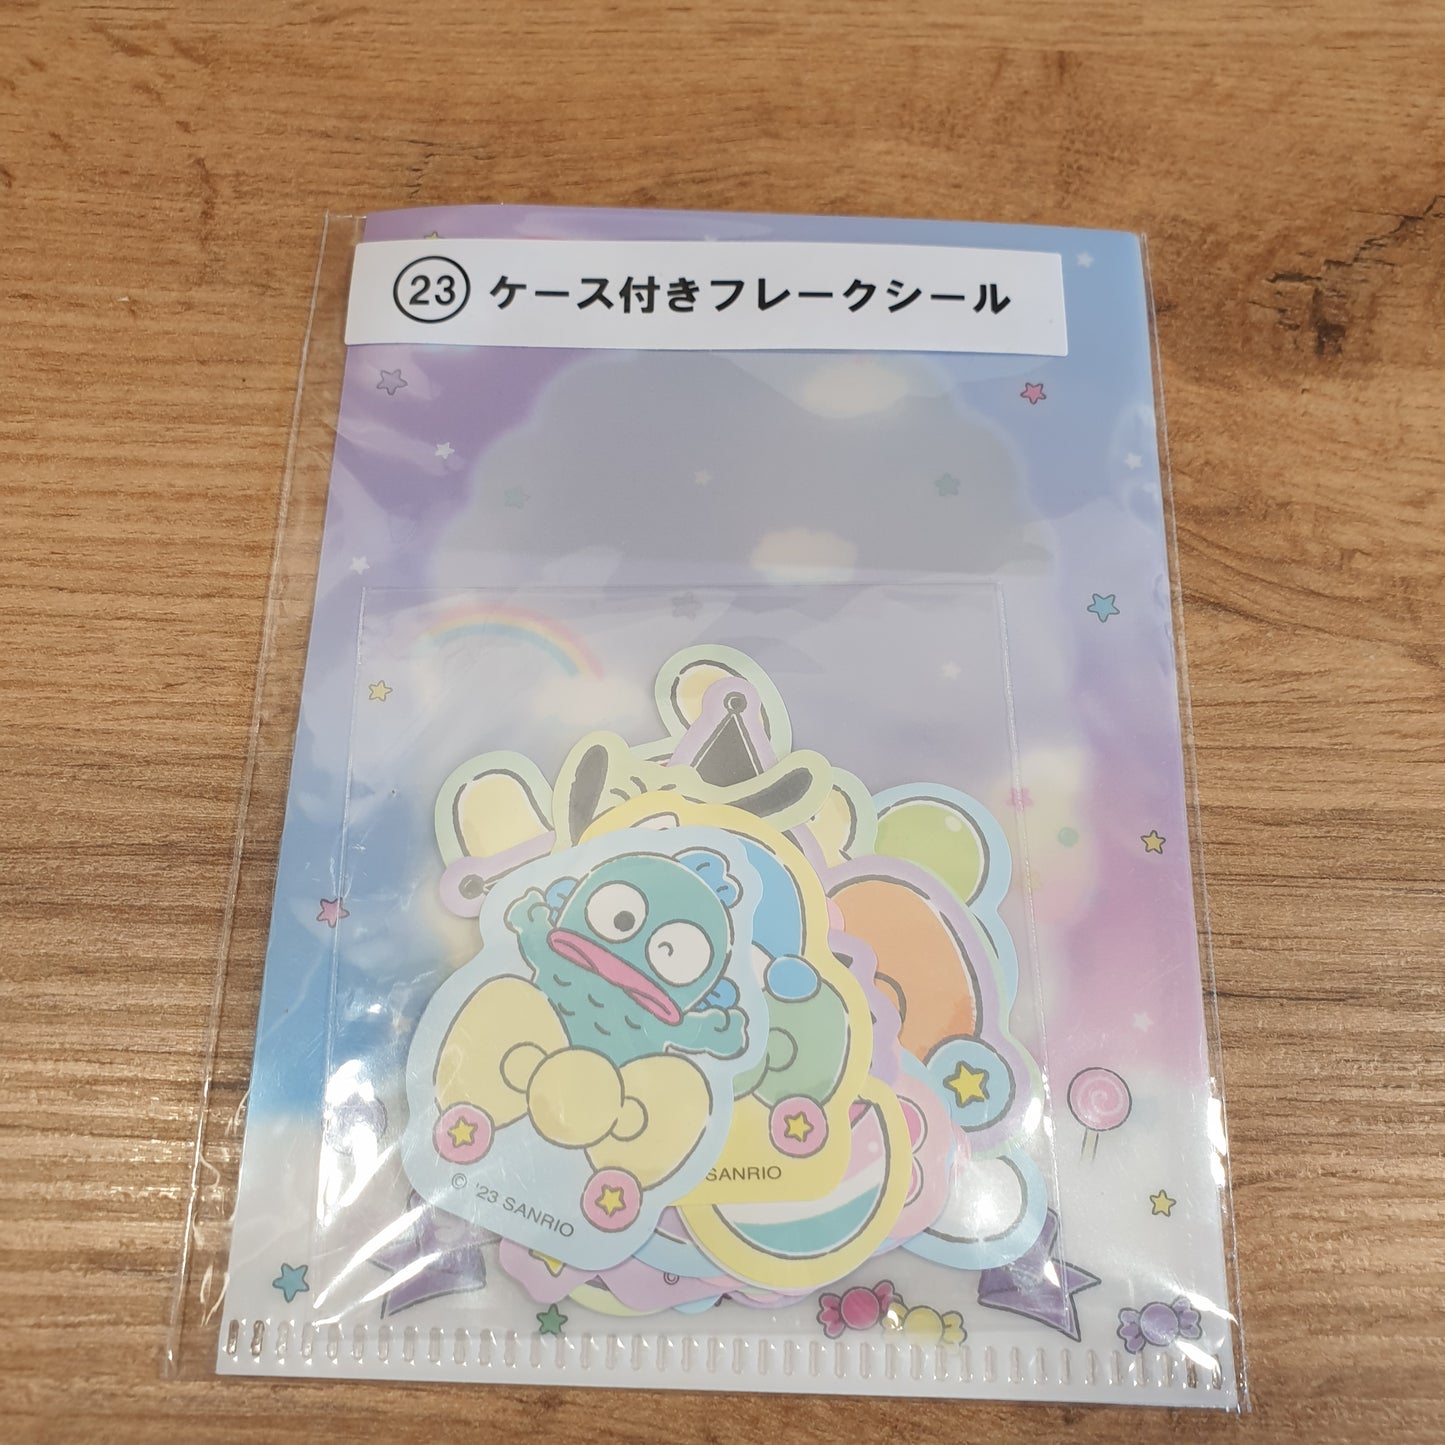 Sanrio Sticker Pack